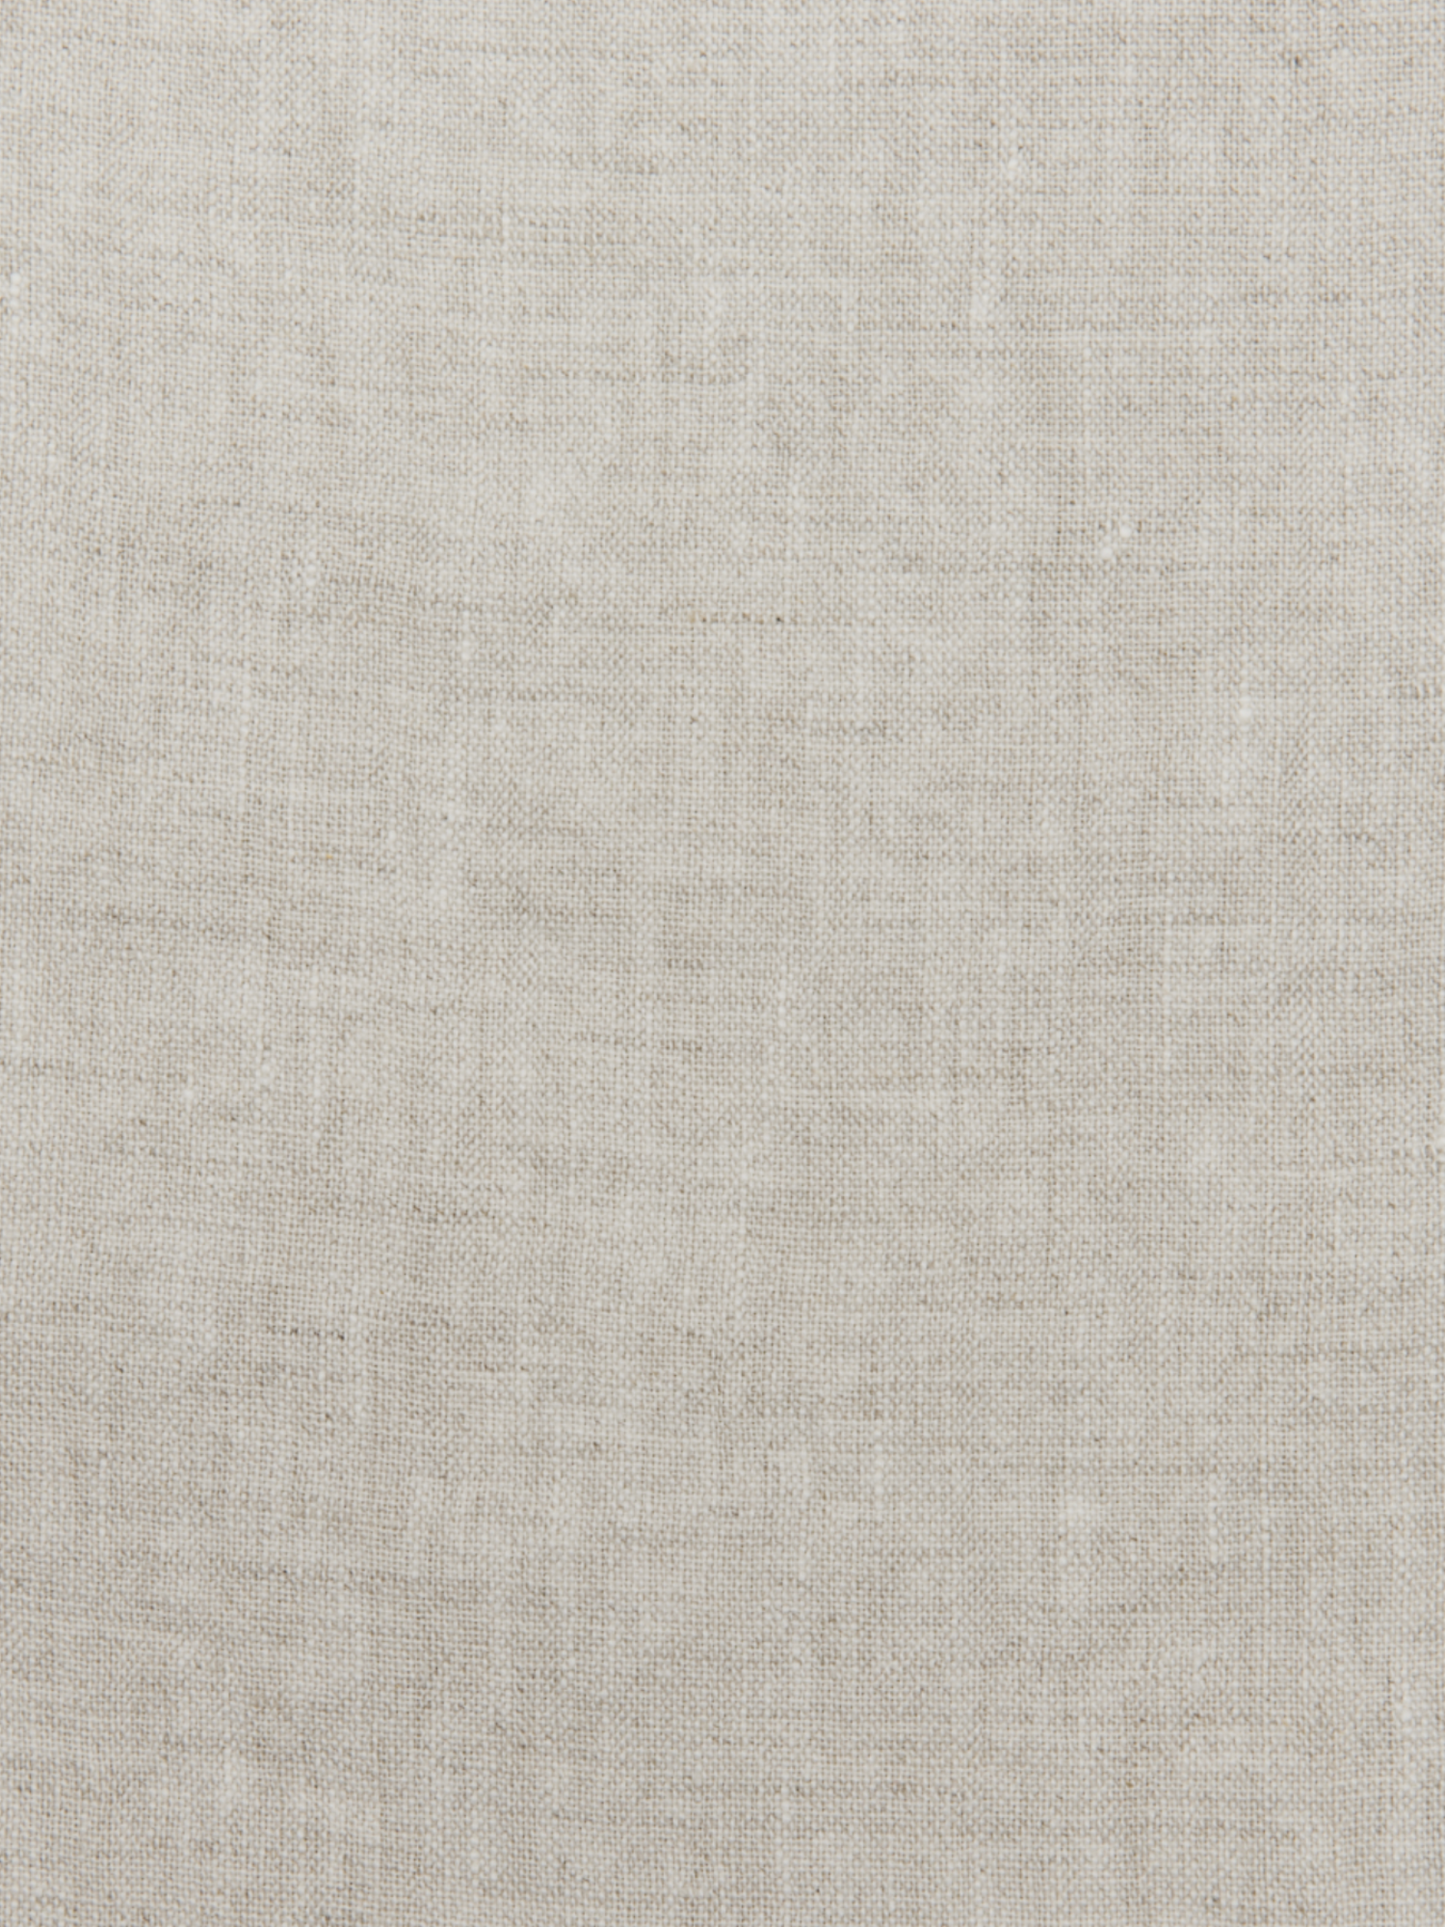 100% Linen Curtains - Natural light color & 175 g/m2. Dusty linen